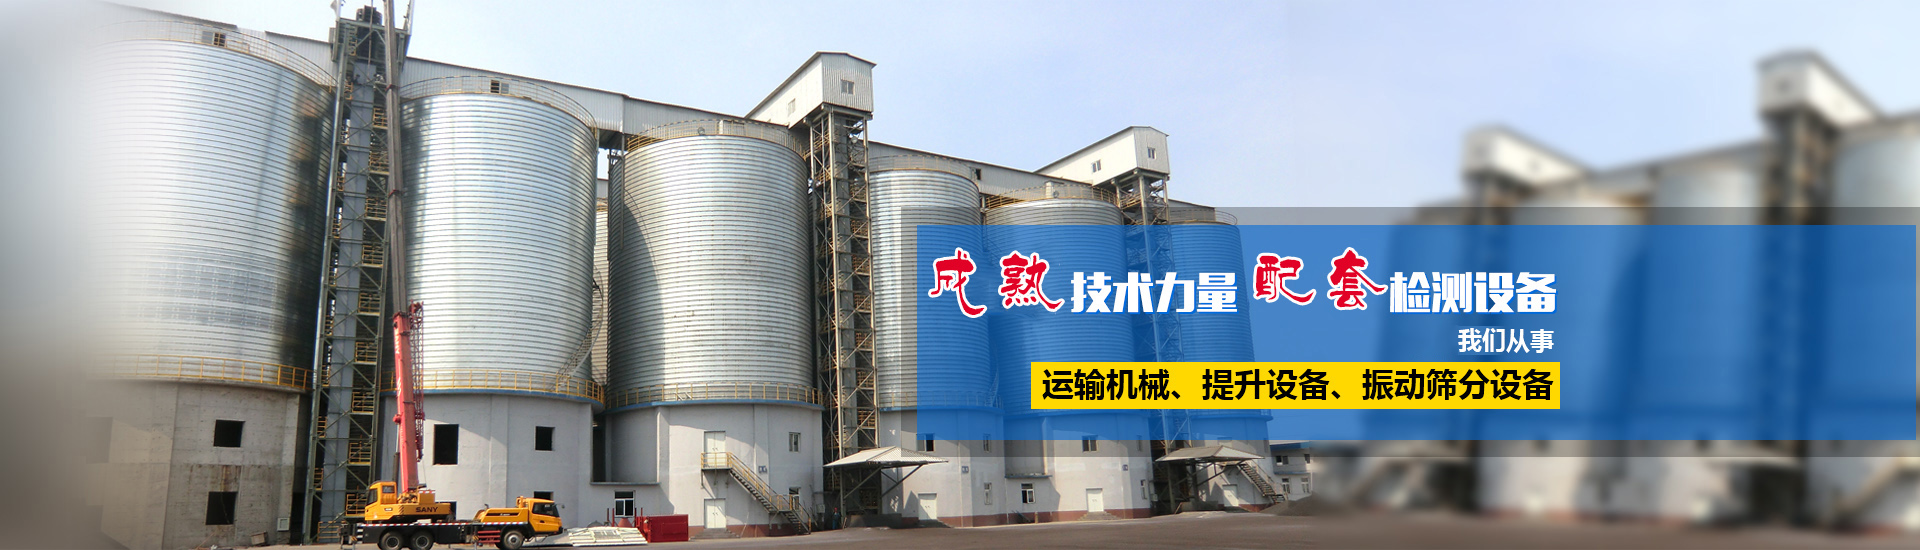 河南省中国888集团机械设备有限公司